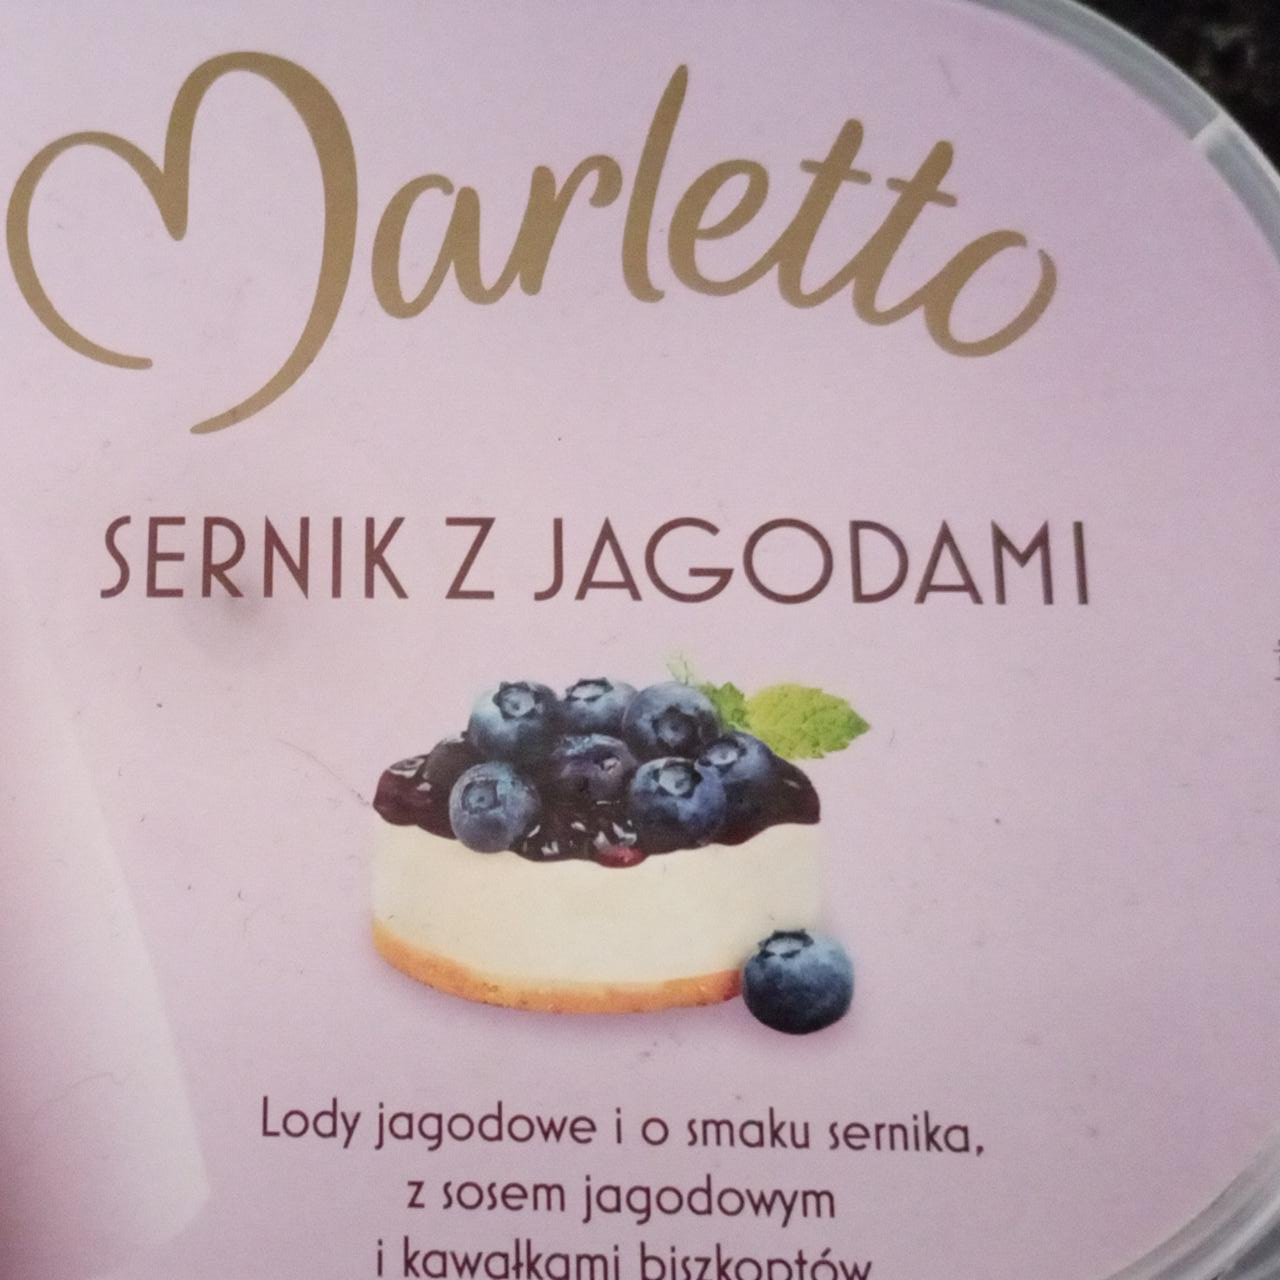 Фото - Мороженое со вкусом сырника с ягодным соусом Marletto